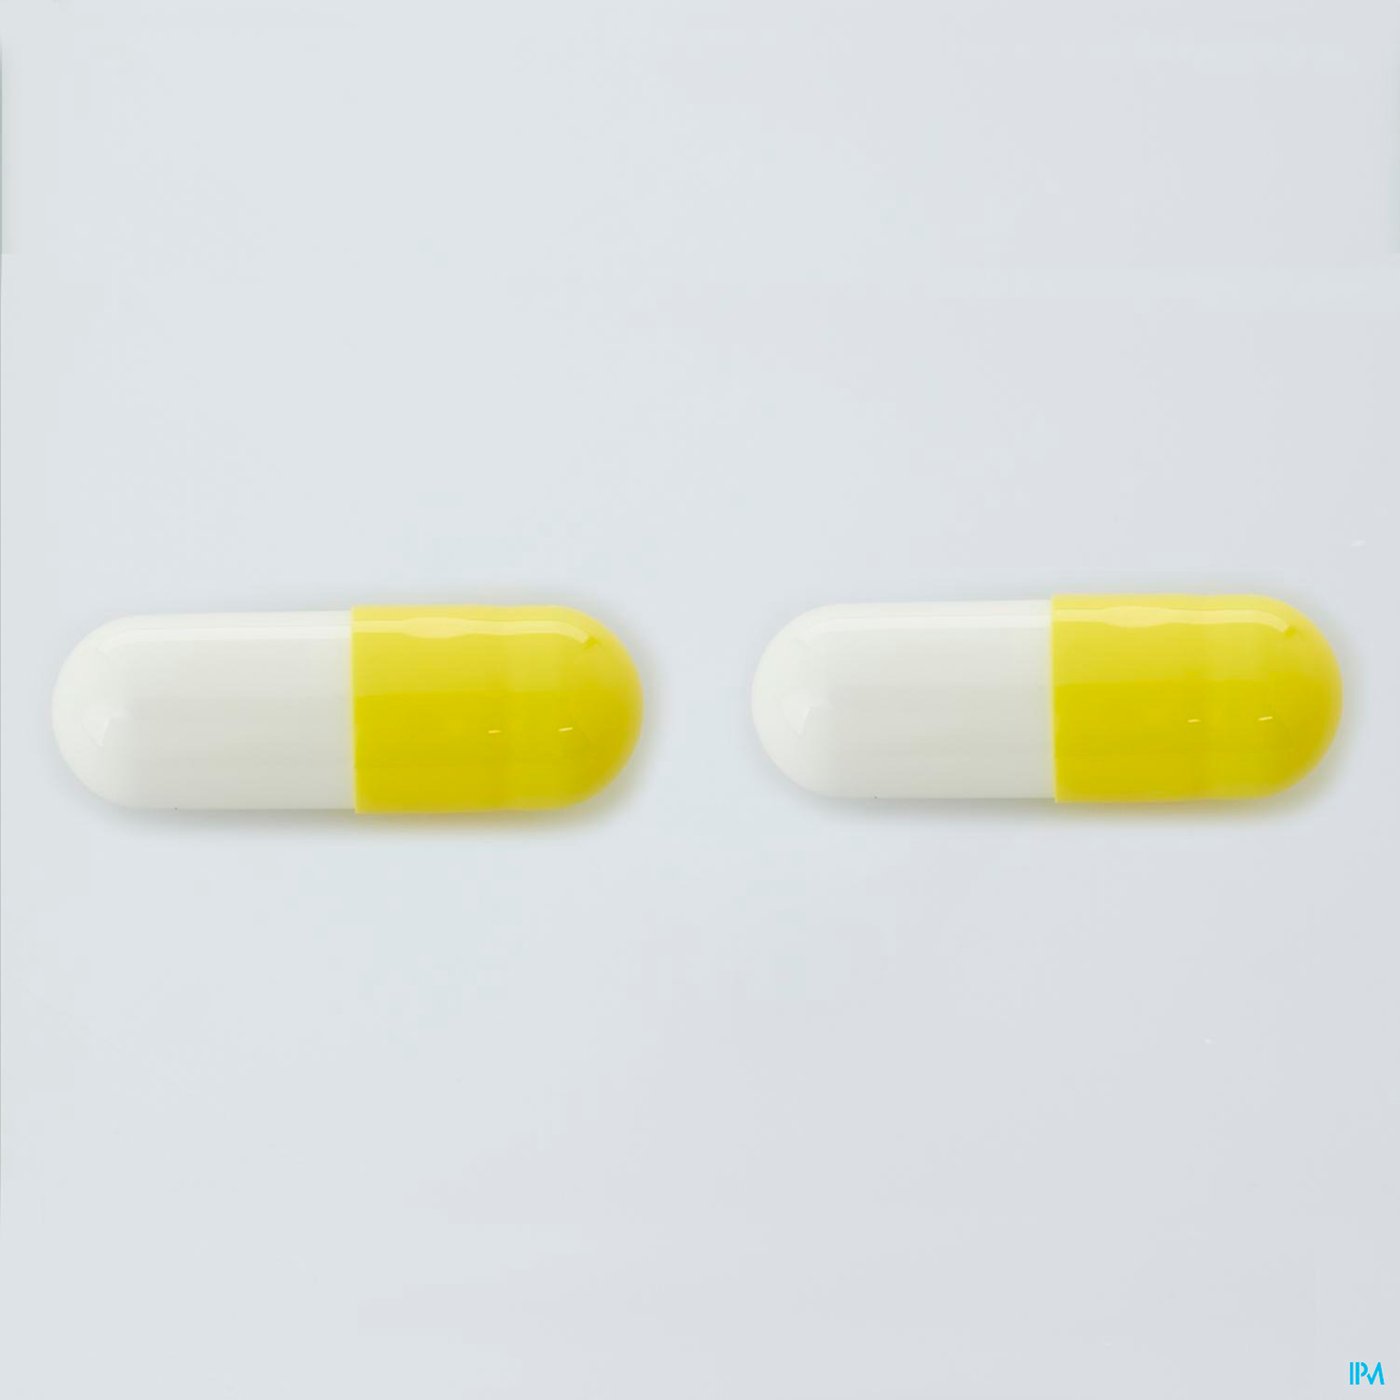 Algostase Nf Caps. 30 pillshot